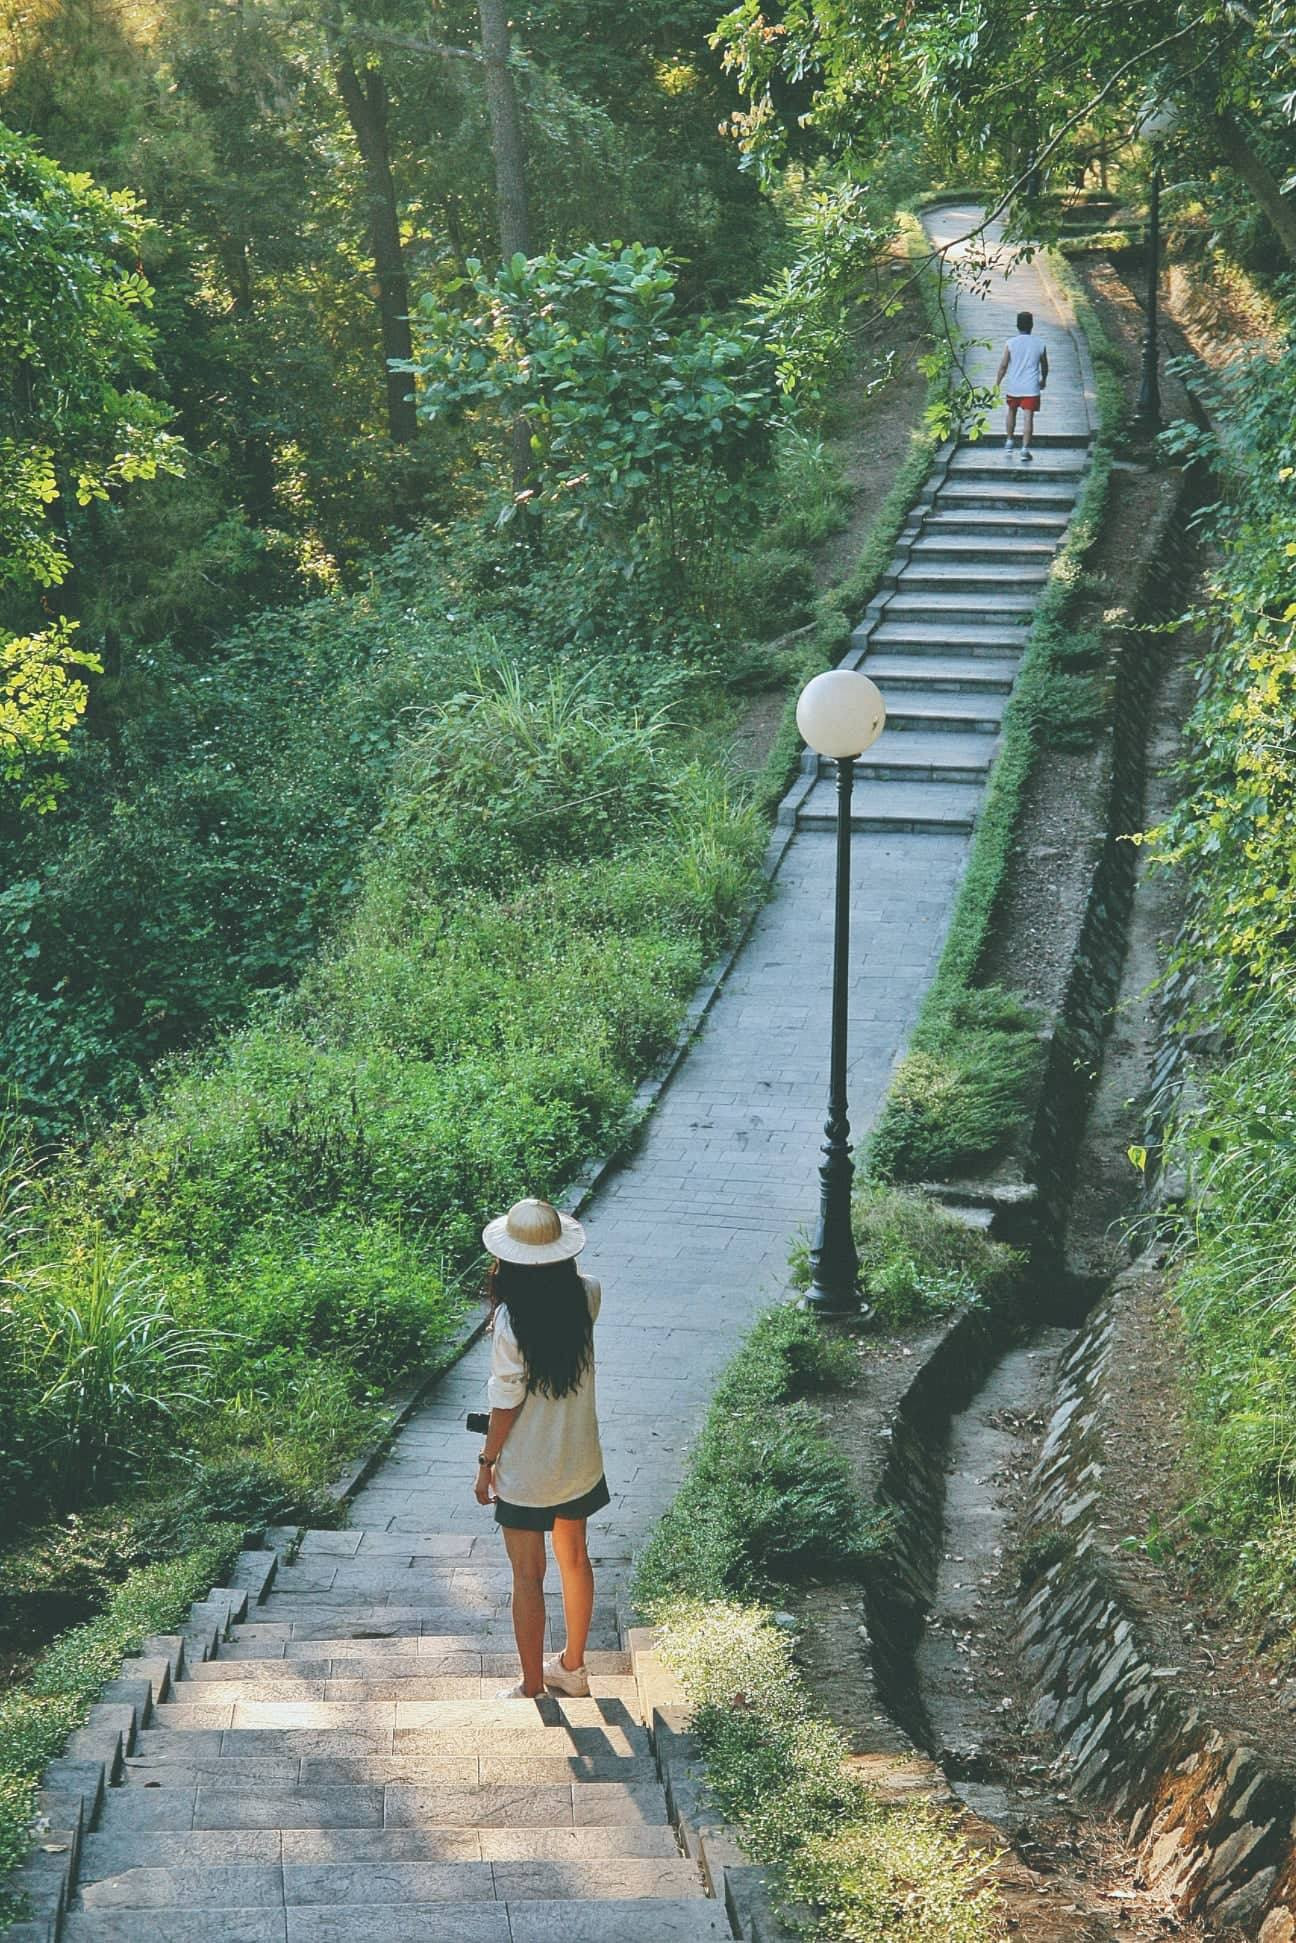 Con đường bậc thang xuyên qua núi Quyết cũng là địa điểm đẹp được nhiều người đến thăm thú, dạo chơi và chụp những tấm ảnh ưng ý. Ảnh: Thuong Vang